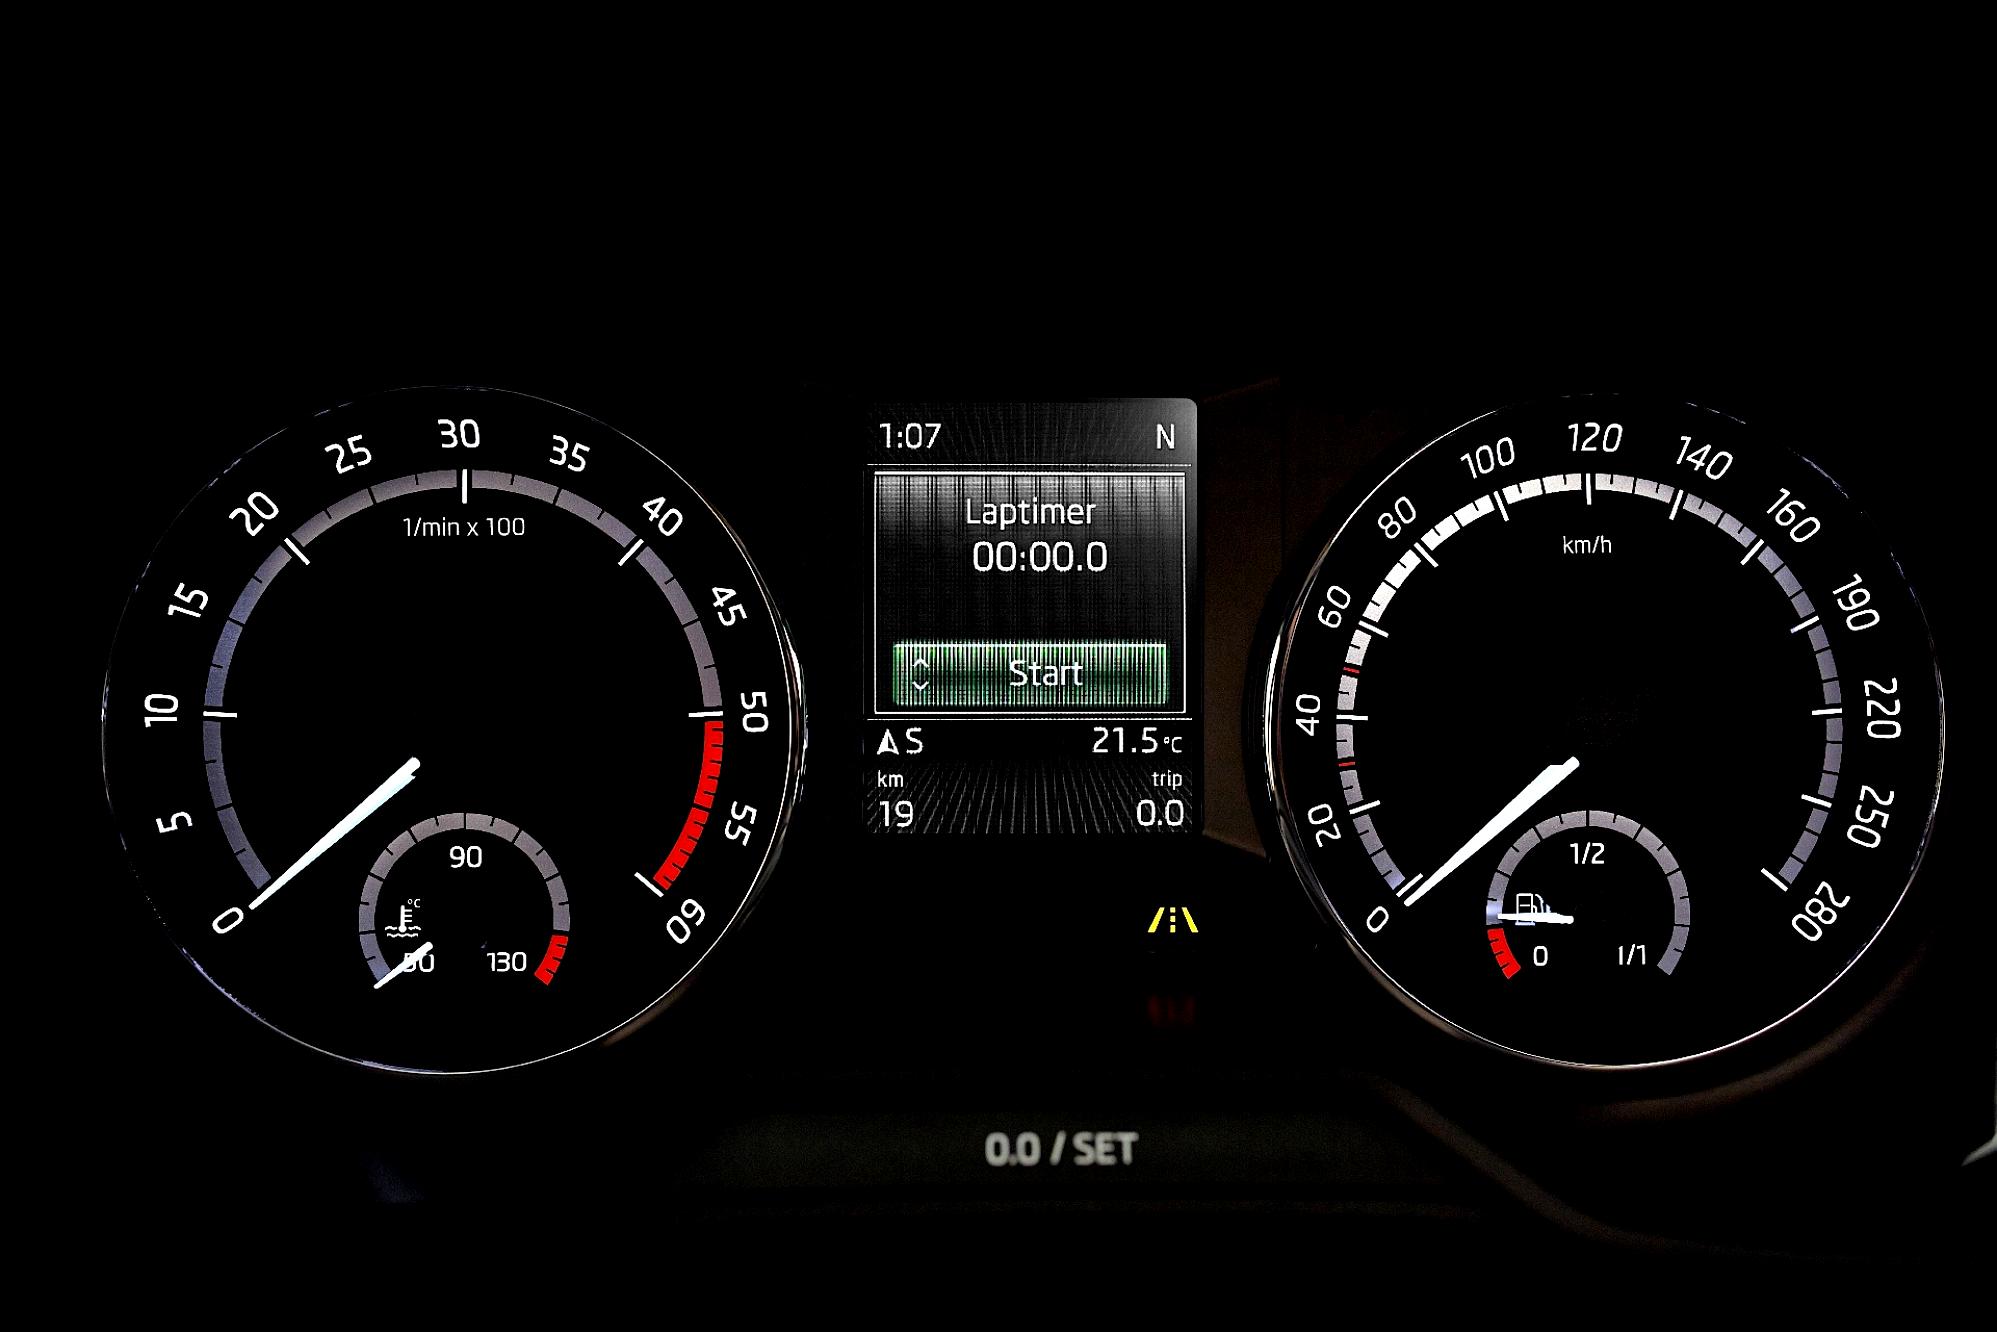 Skoda Octavia RS 2013 #62